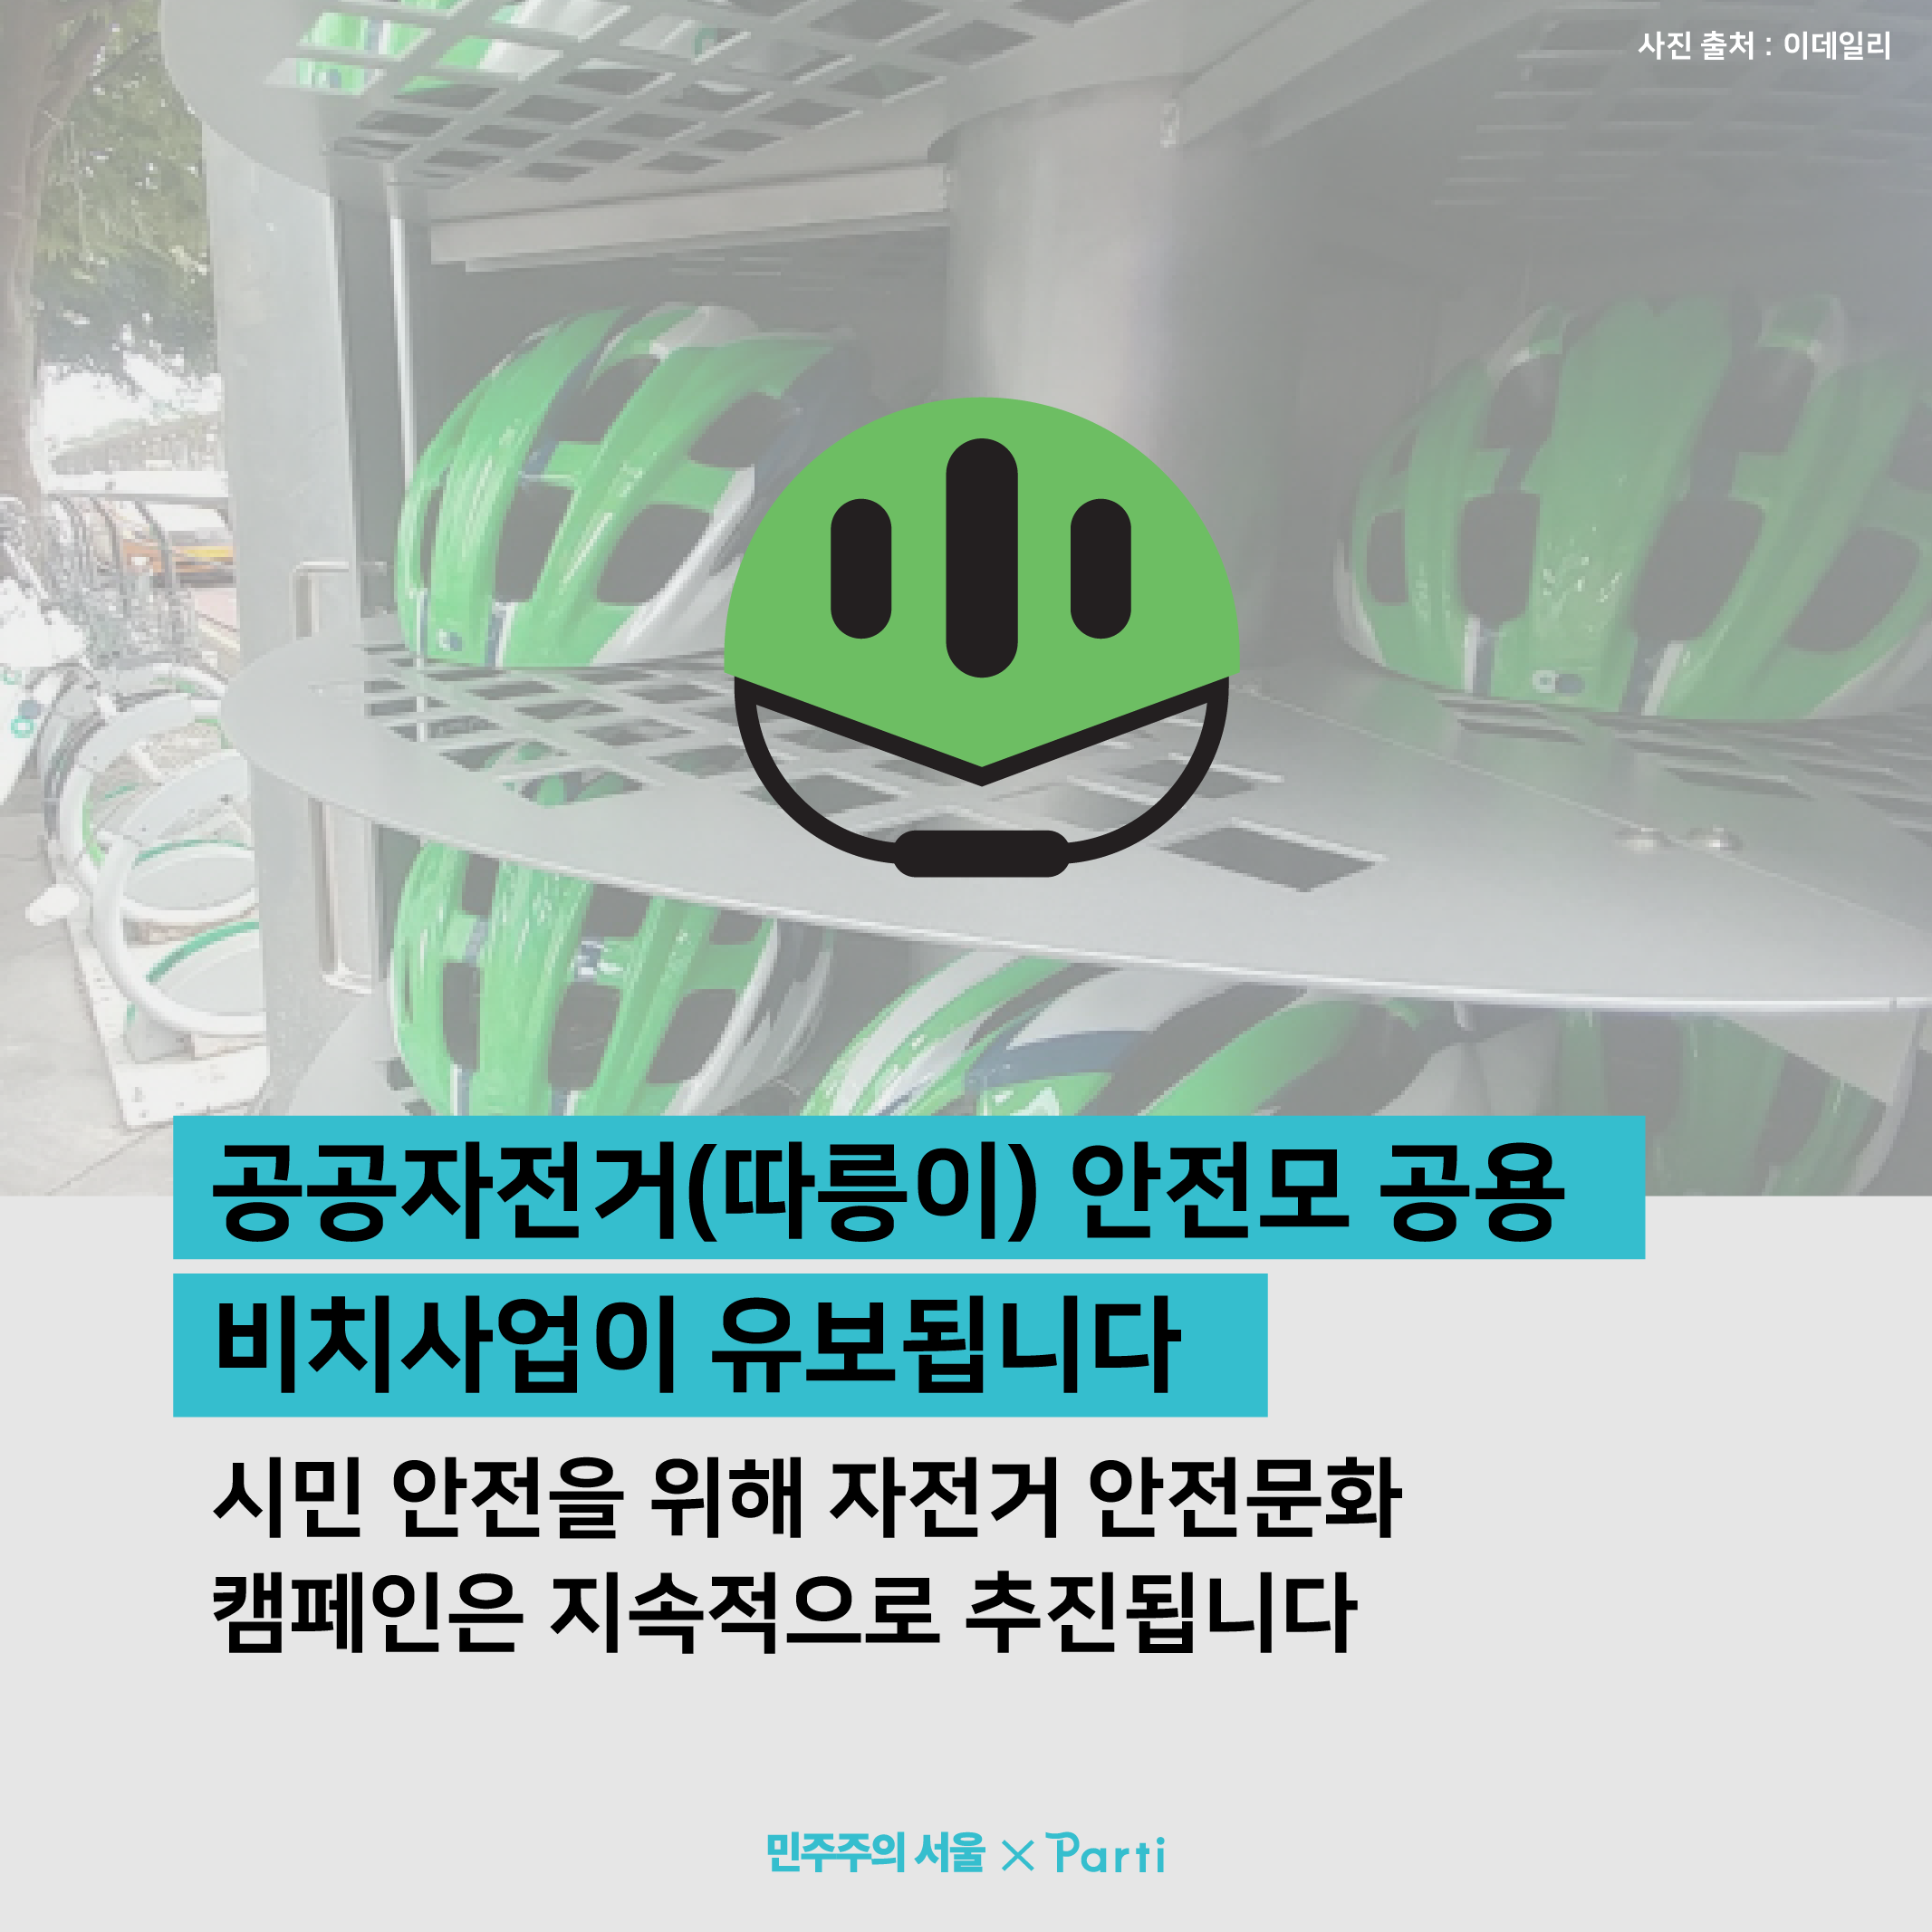 공공자전거(따릉이) 안전모 공용 비치사업이 유보됩니다. 단, 시민 안전을 위해 자전거 안전문화 캠페인은 지속적으로 추진됩니다.